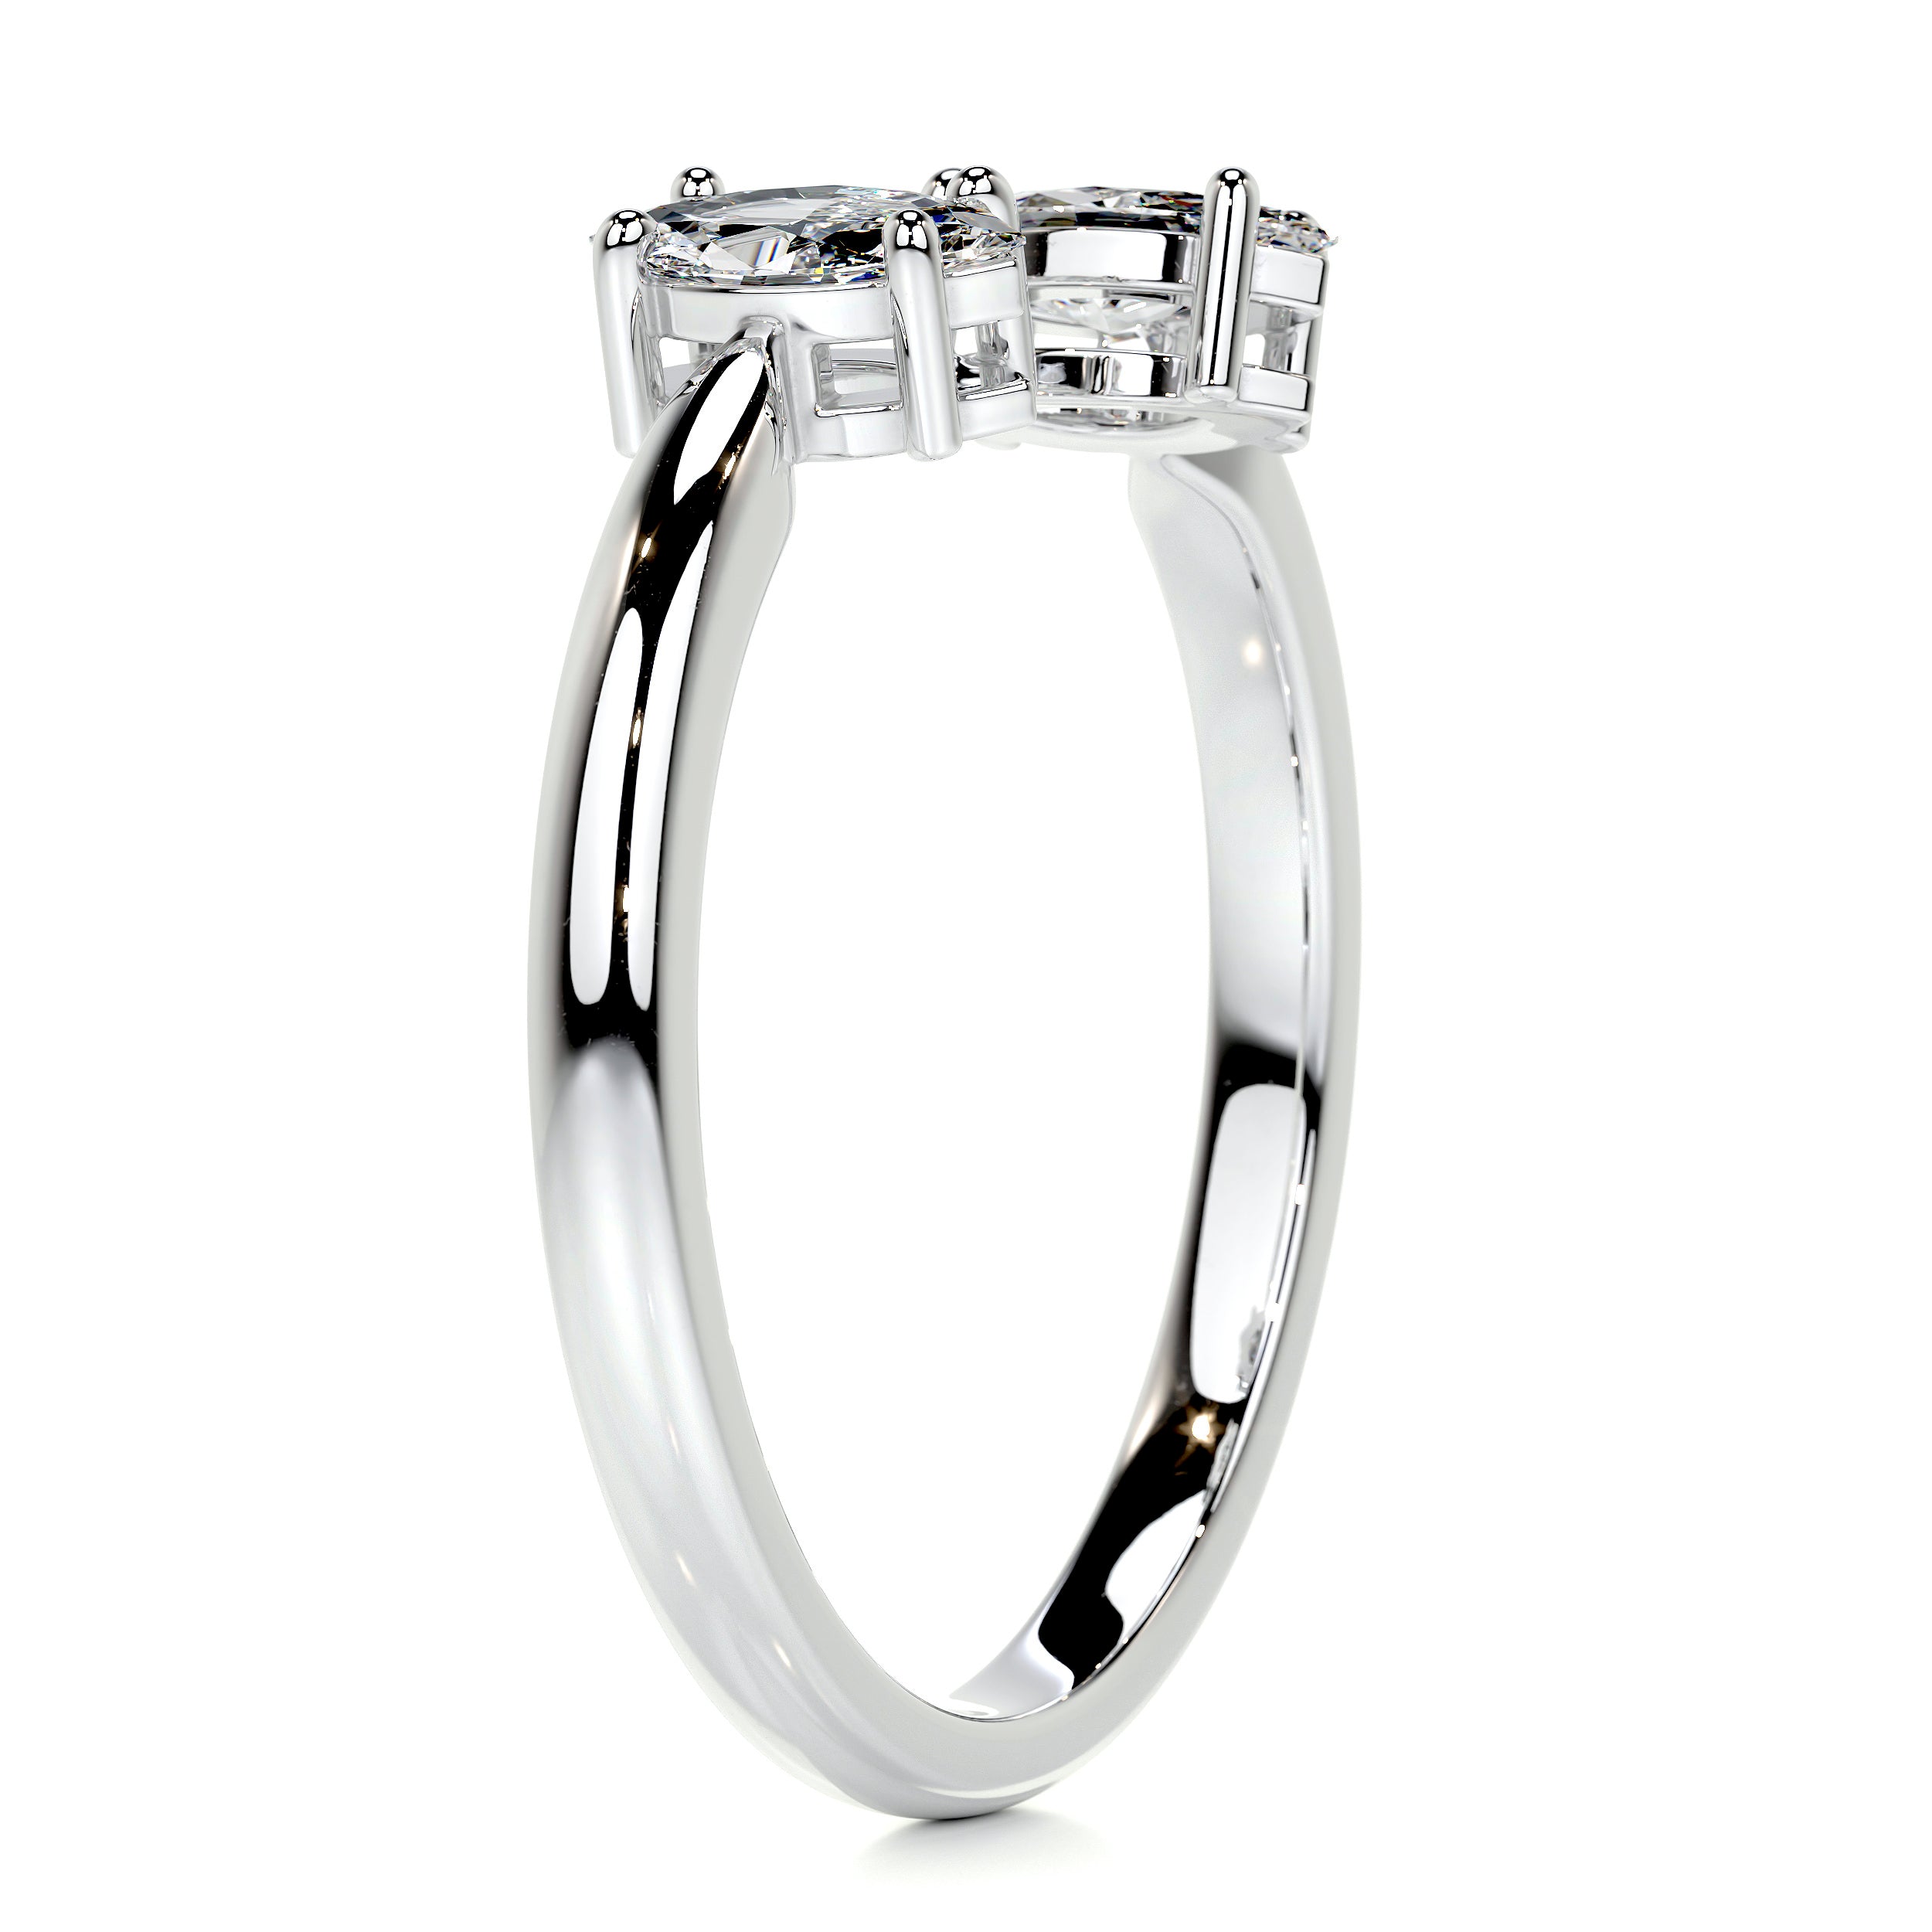 Celine Fashion Ring   (0.36 Carat) -14K White Gold